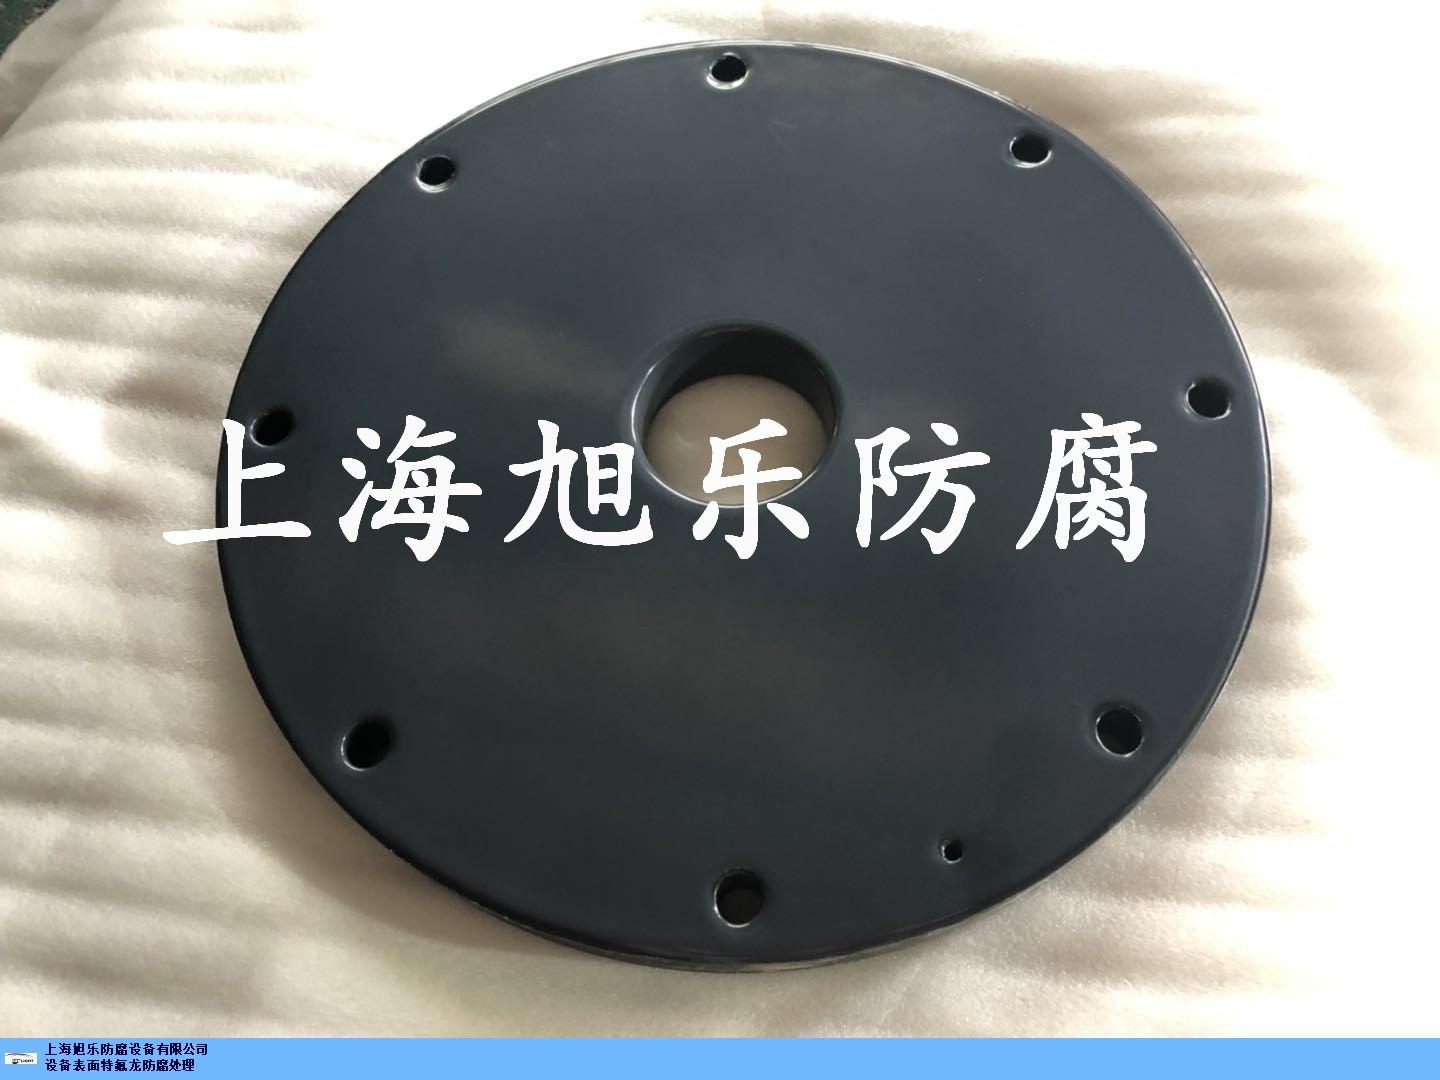 江苏可靠铁氟龙喷涂厂家联系人 信息推荐「上海旭乐防腐设备供应」